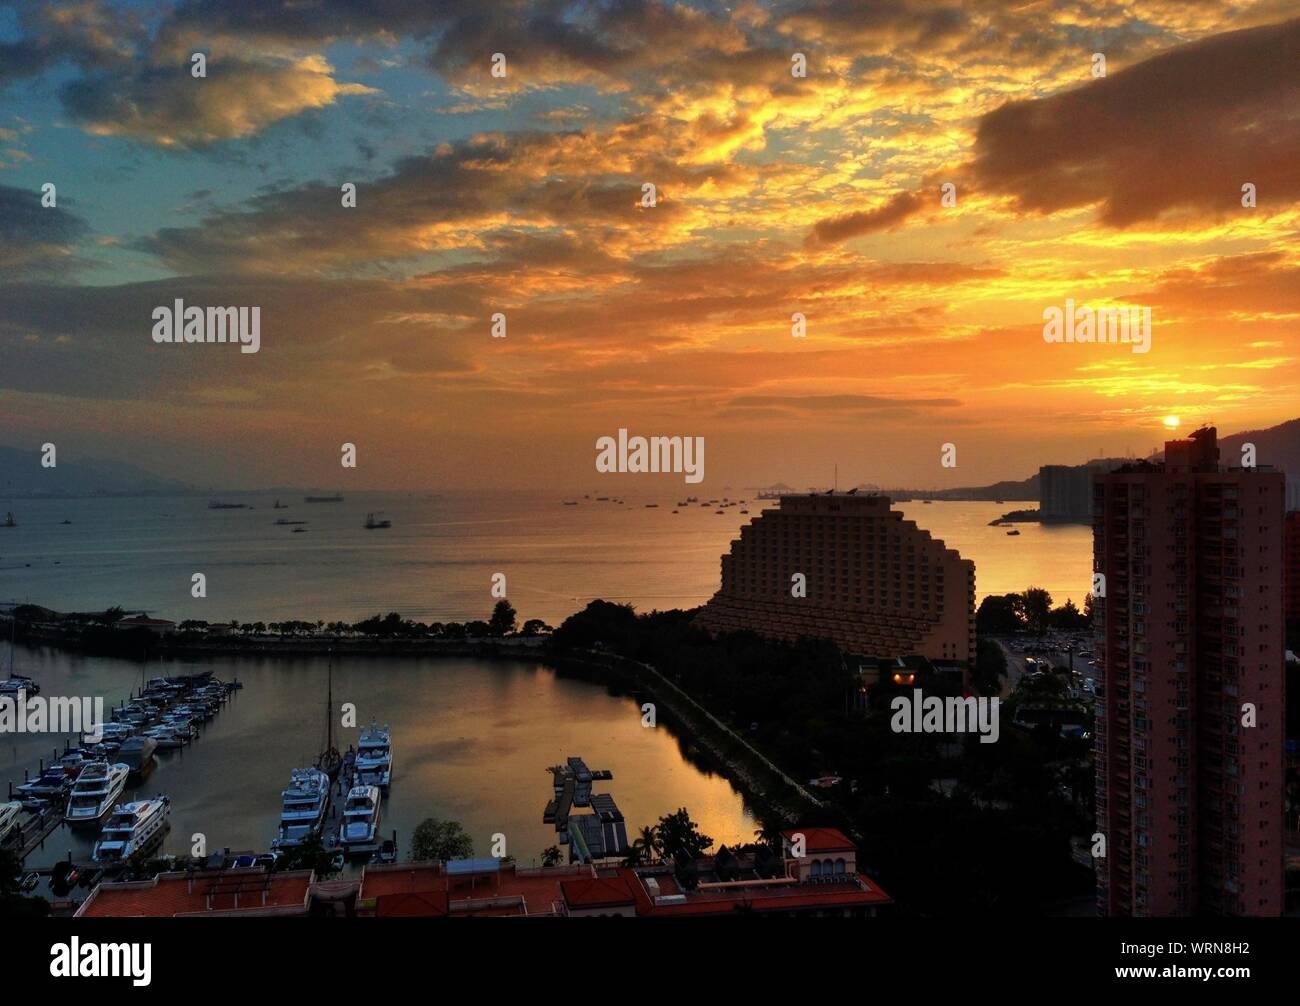 View Of Hong Kong Gold Coast Hotel And Harbor At Sunset Stock Photo